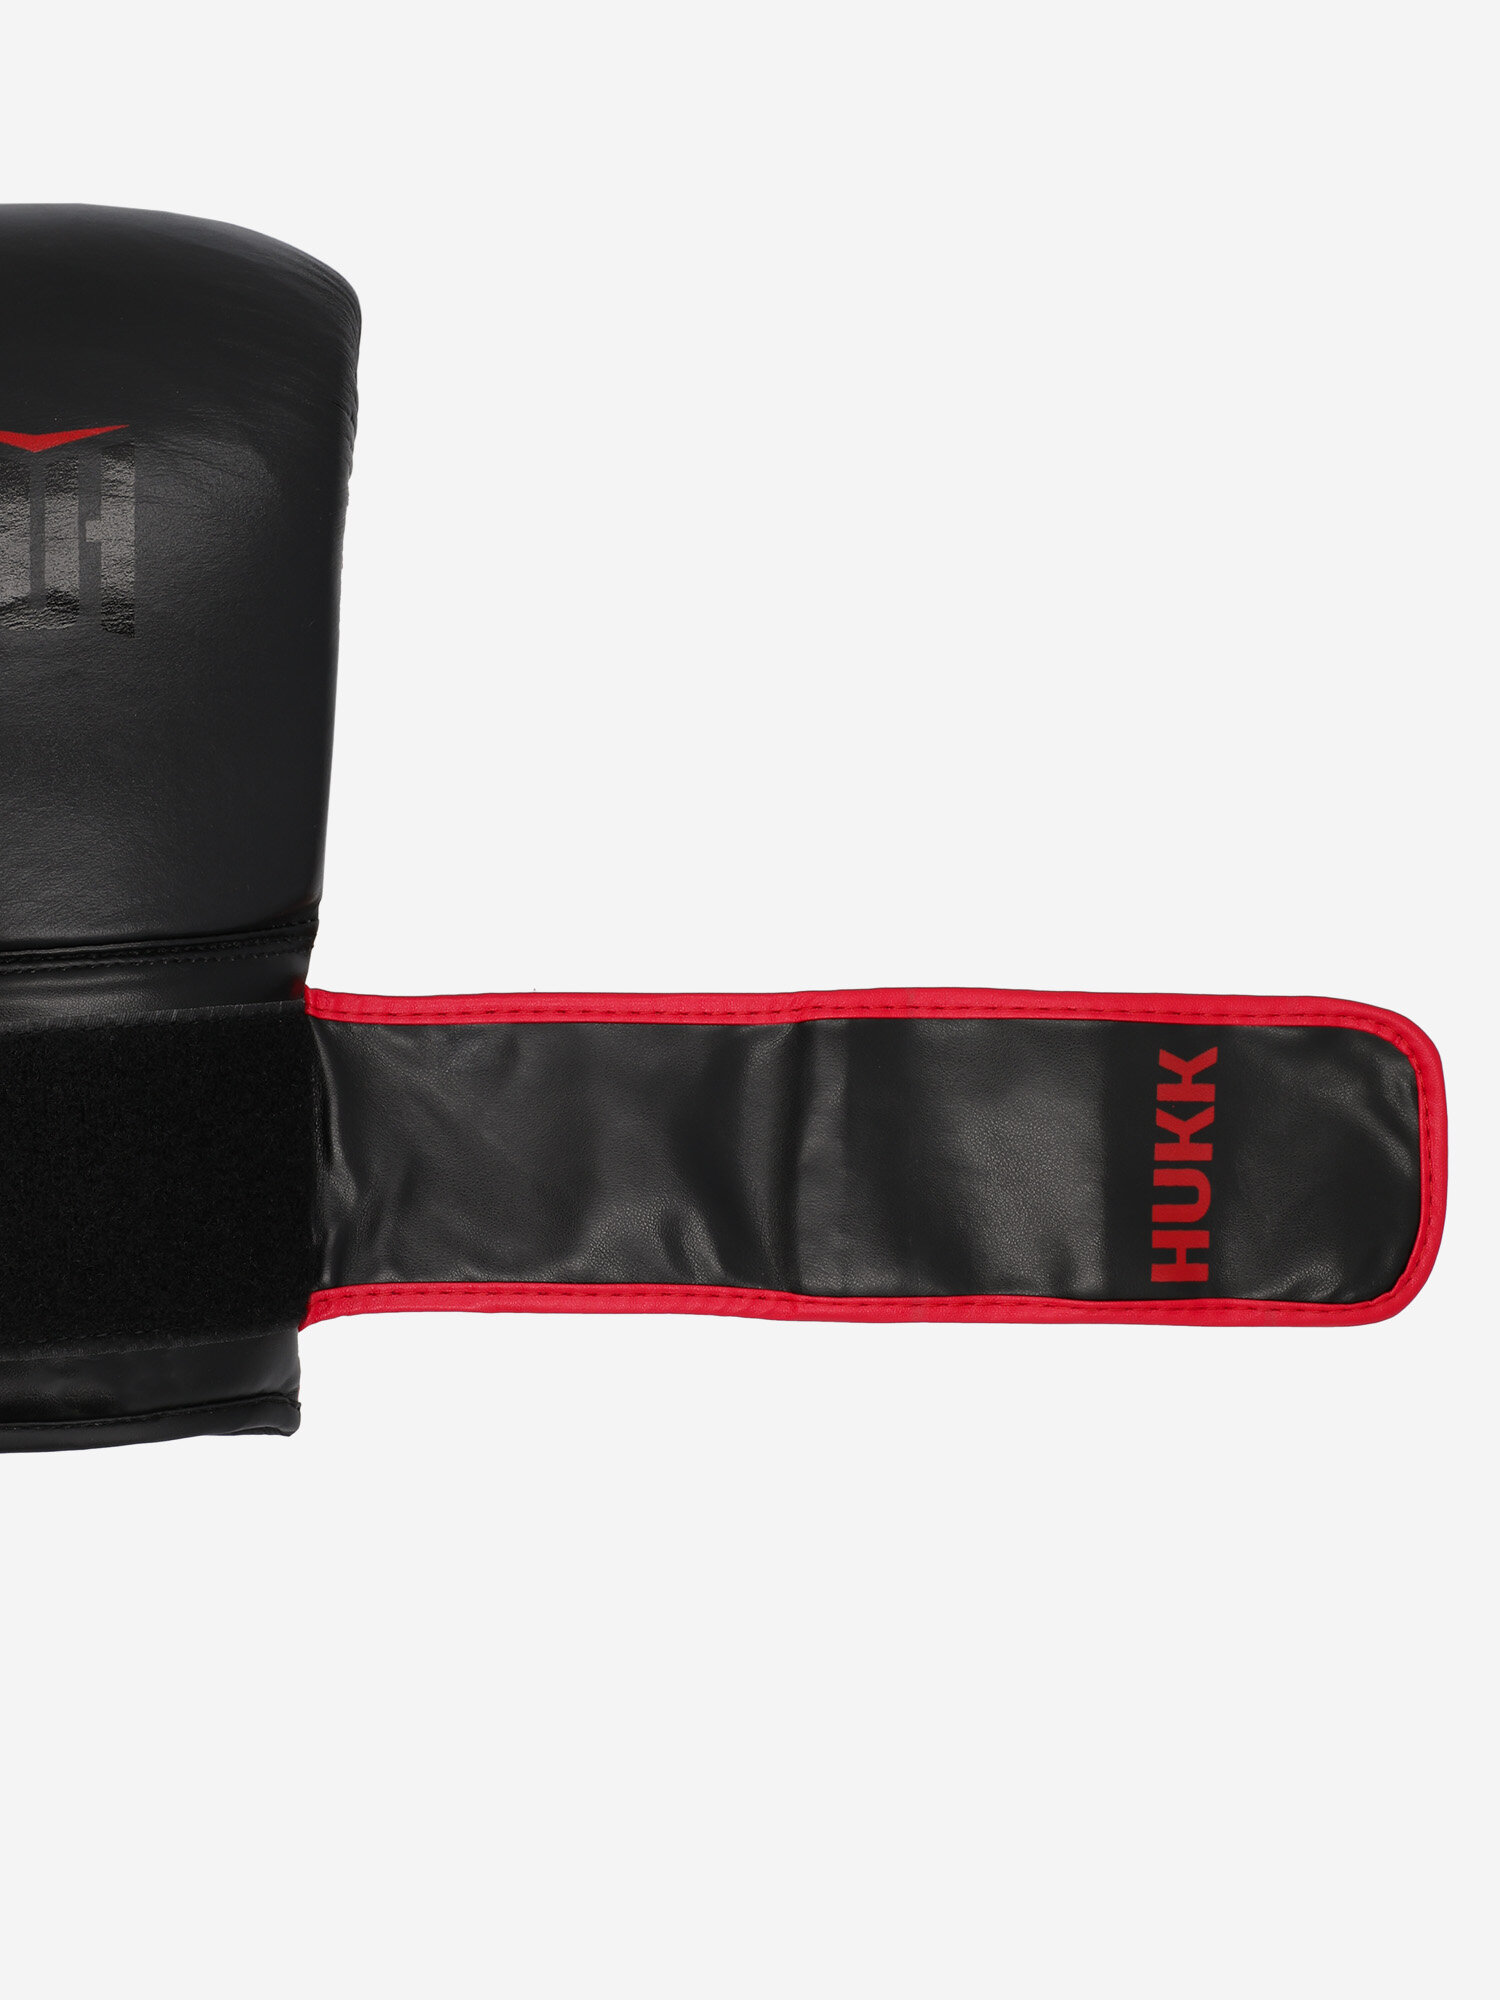 Перчатки боксерские Hukk Honor Черный; RUS: 10oz, Ориг: 10oz